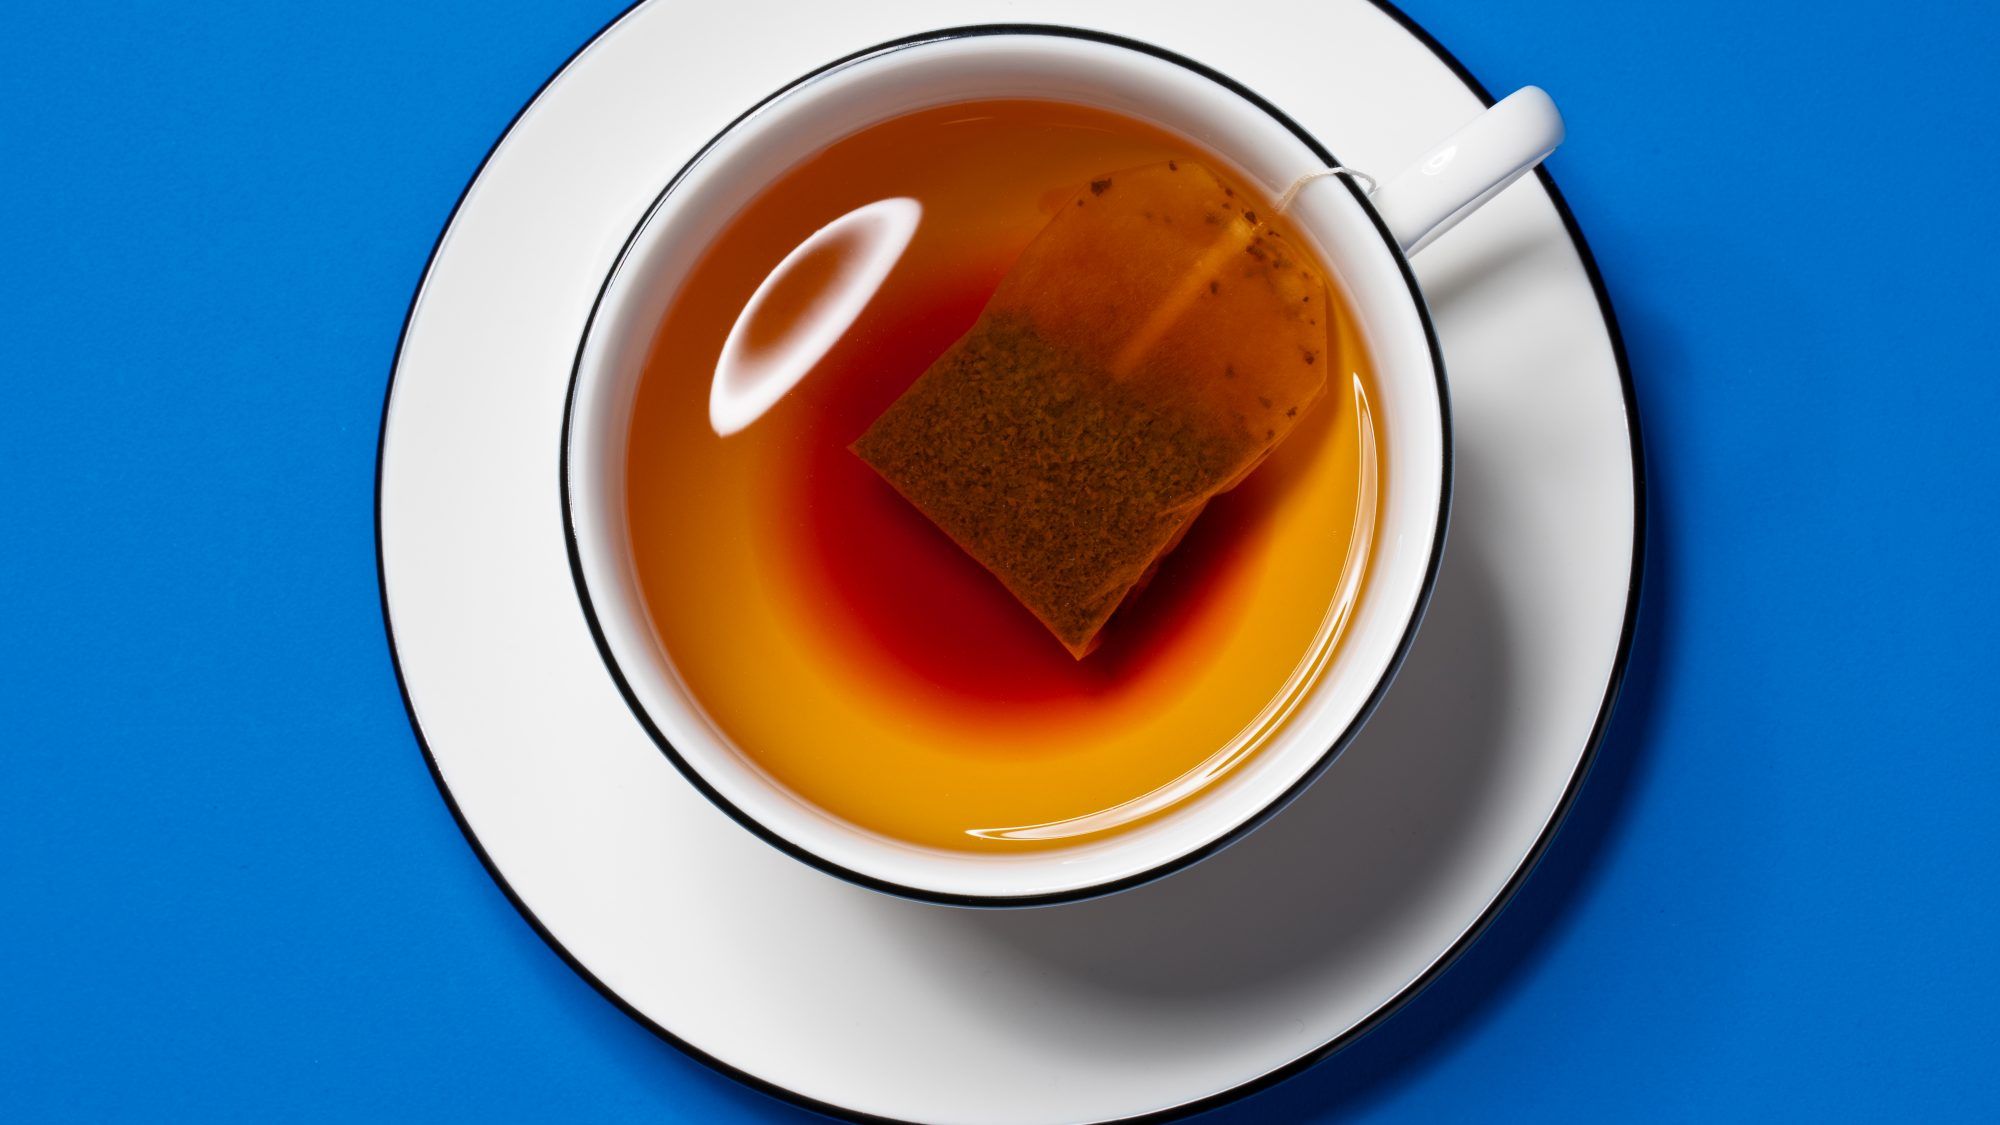 מדוע אסור לכם לעשות תה במיקרוגל - בנוסף הדרך הנכונה להכין אותו